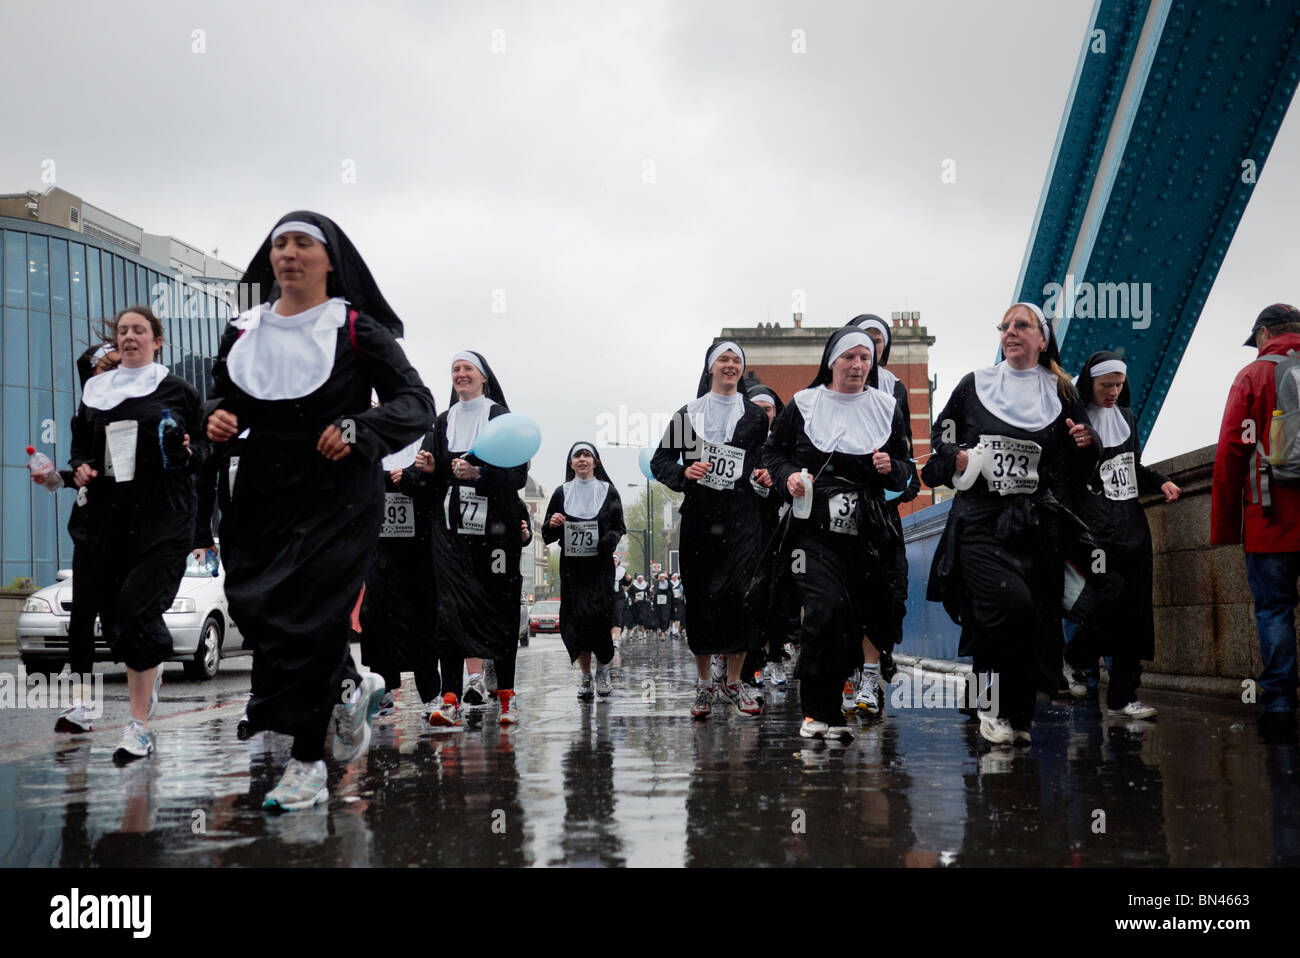 La charité des religieuses sur Run run à Londres Angleterre Royaume-uni Banque D'Images